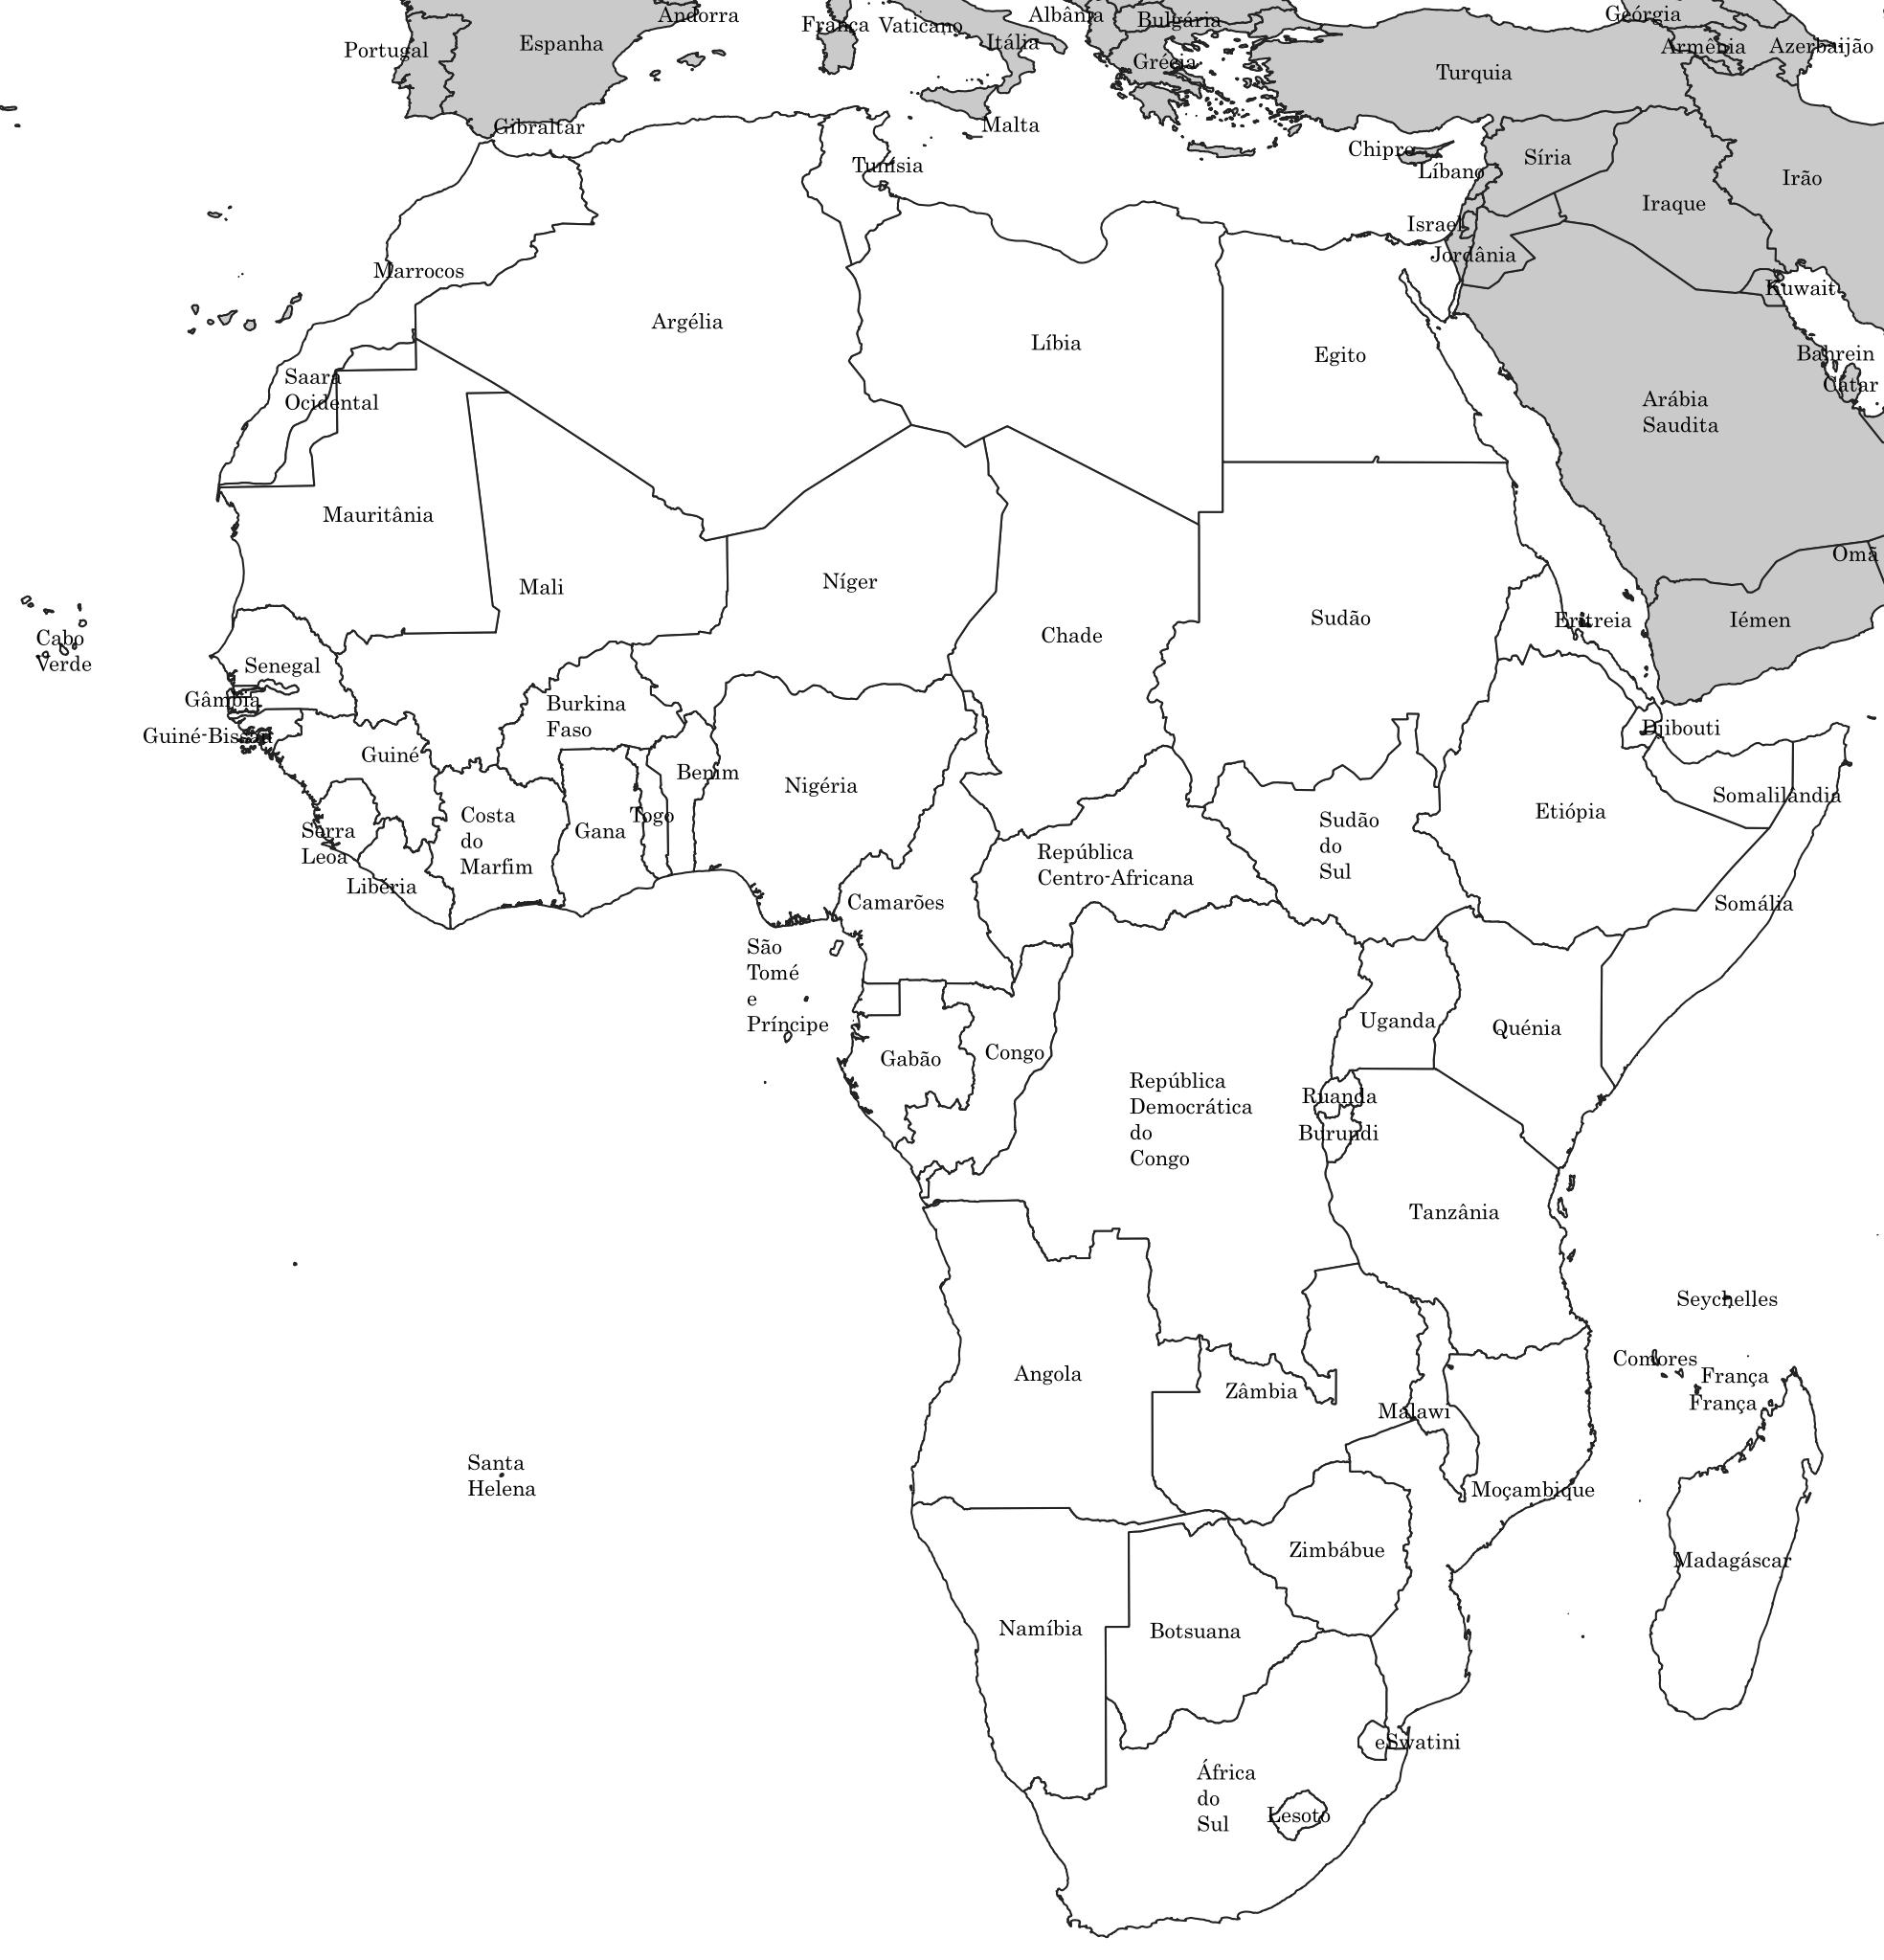 Mapa do continente africano em preto e branco